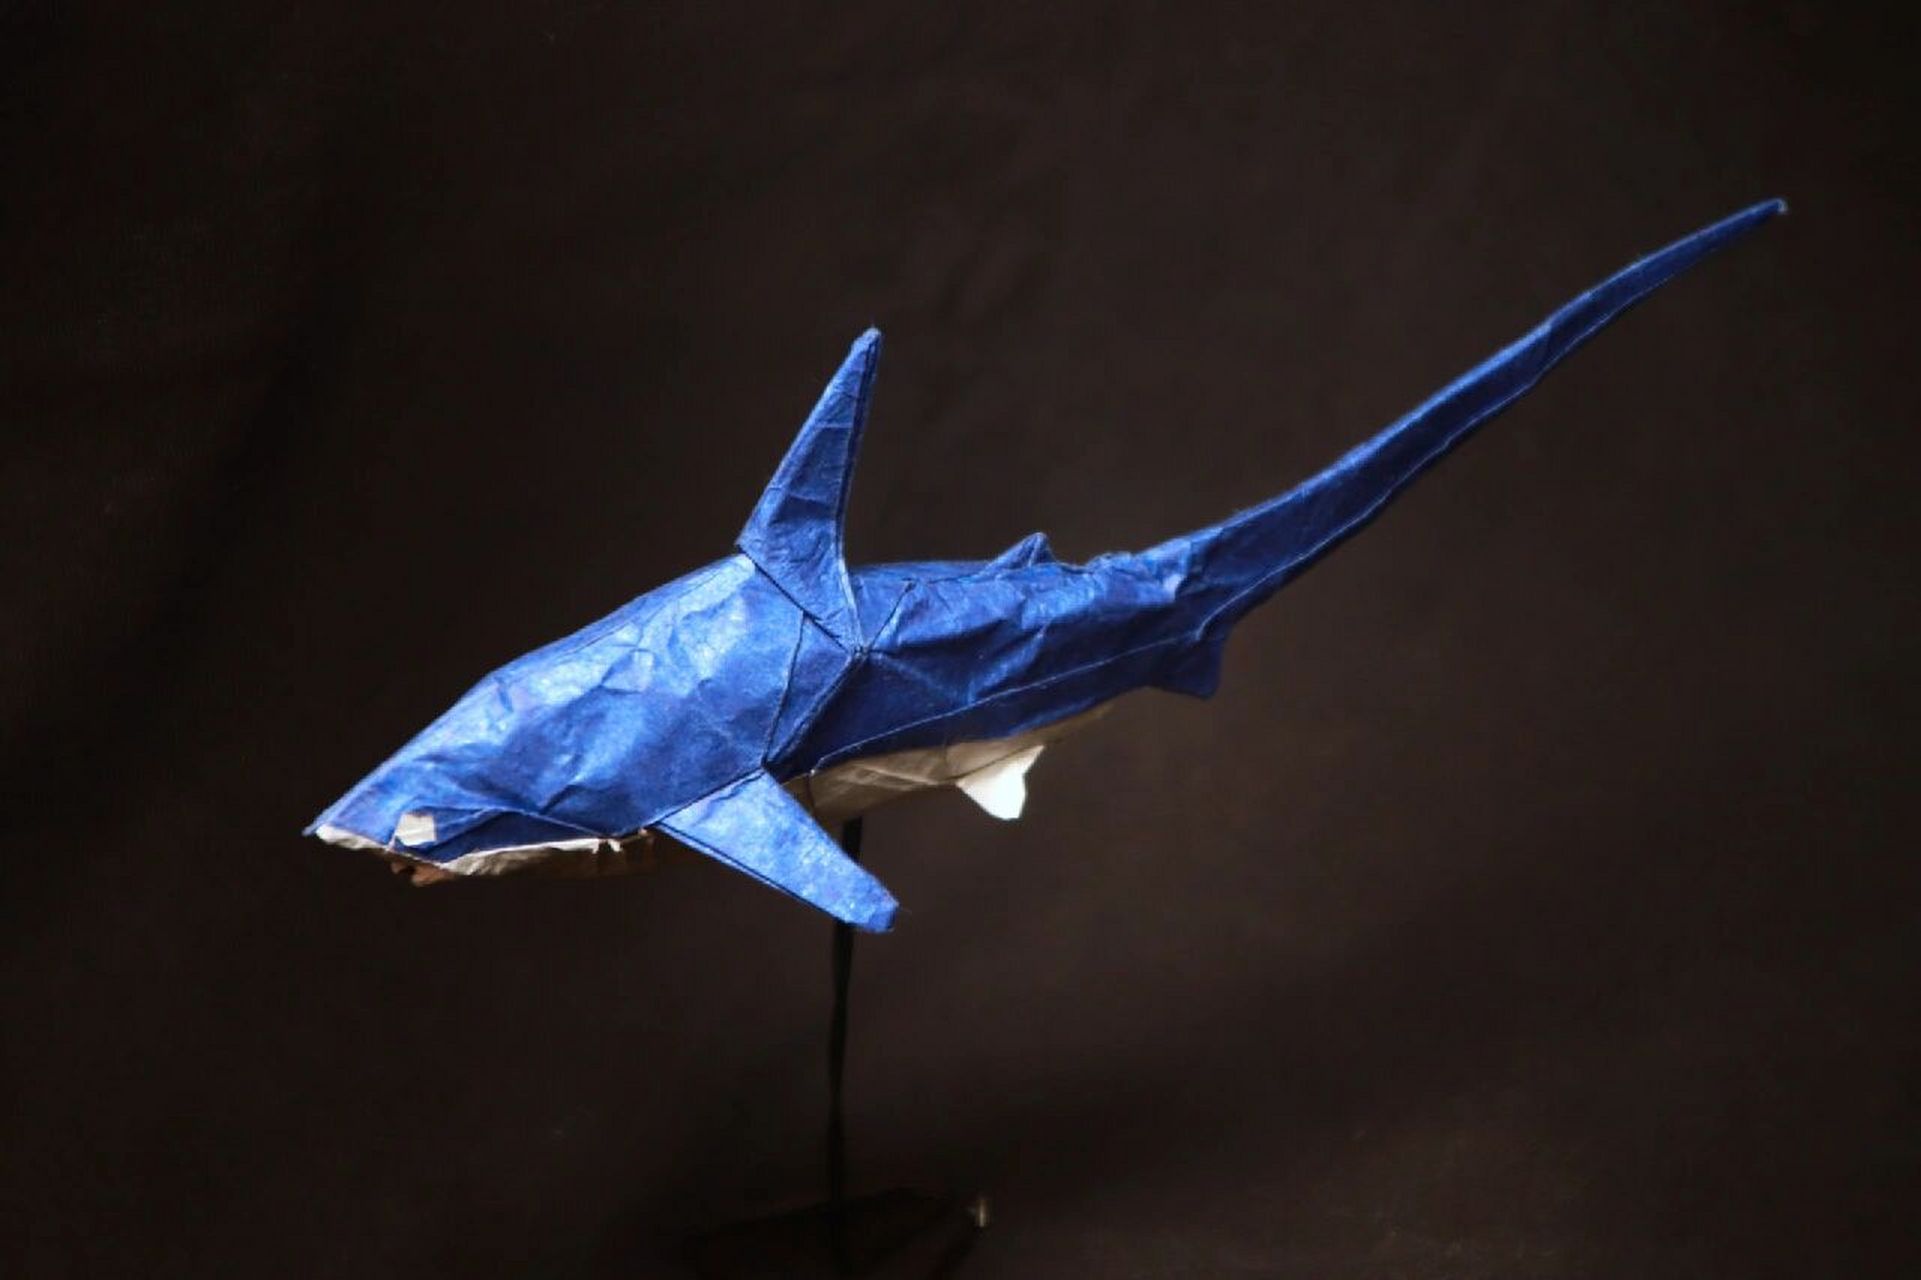 折一只立体鲨鱼用纸图片